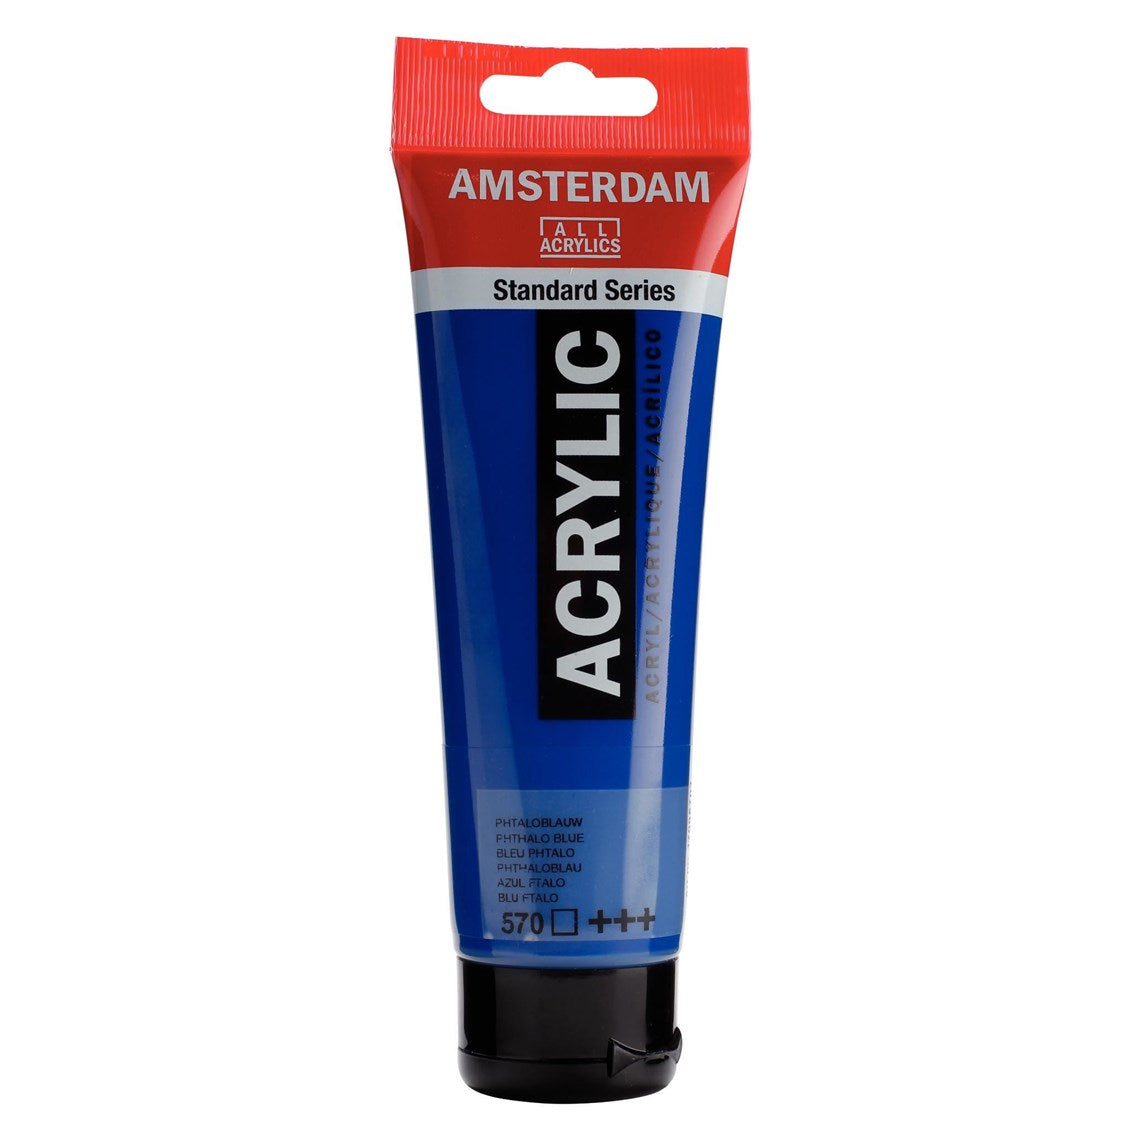 570 Phthalosininen Amsterdam Akryylimaali 120 ml  Royal Talens Akryylimaalit 120 ml tuubissa. Amsterdam akryylimaali on hintatietoisen harrastajan valinta. Maalin pohjana on kestävä 100 % akryylihartsi ja maali on saatavilla useissa värisävyissä. Amsterdam akryylimaali kuivuu nopeasti ja on myrkytöntä. Vesiliukoinen ennen kuivumista. Kuivuttuaan vedenkestävä.